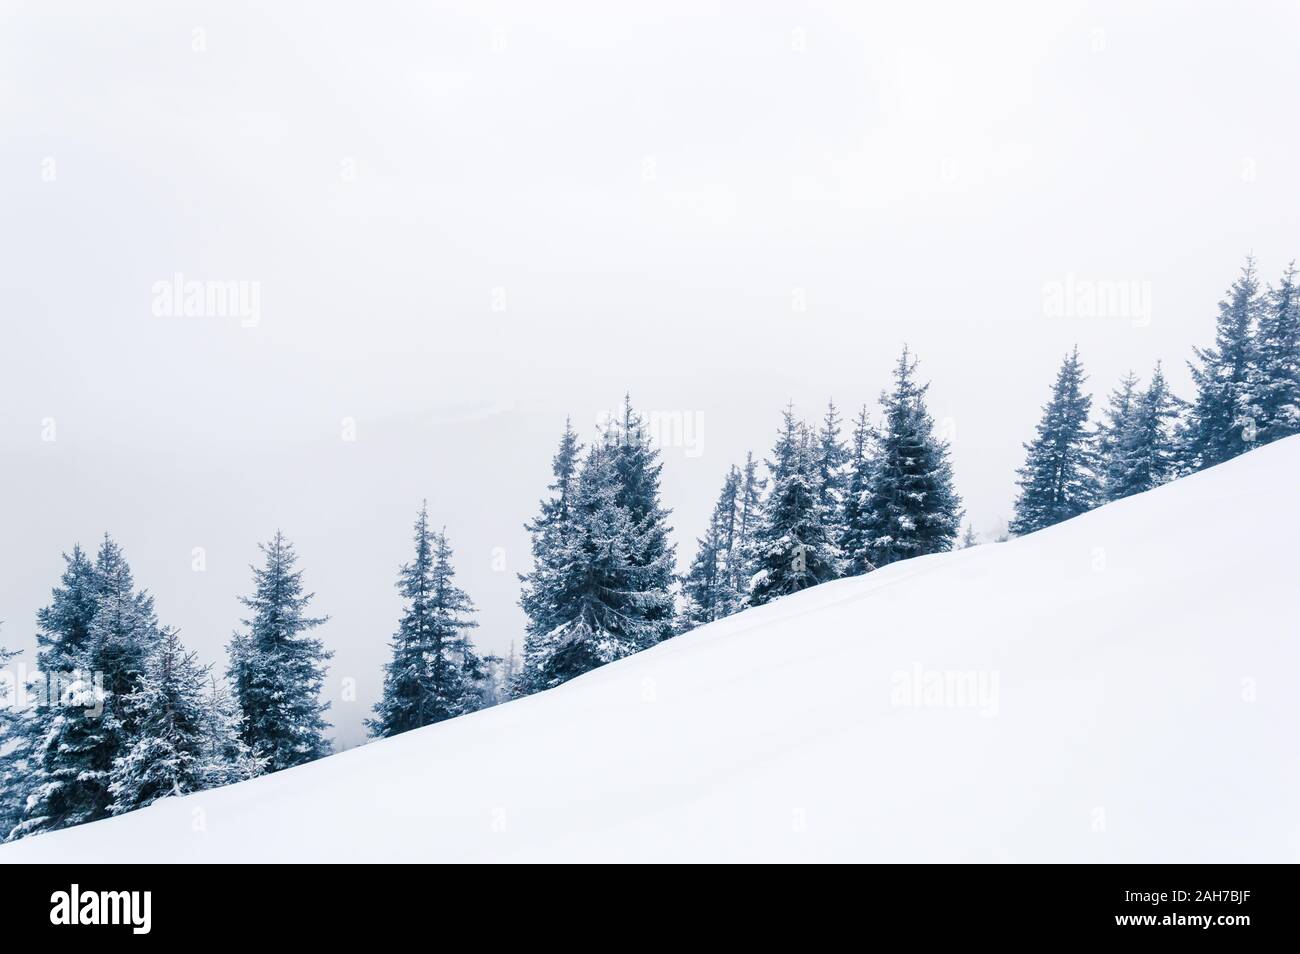 Fond d'hiver blanc simple avec la forêt sur une colline couverte de neige. Une ligne de sapins enneigés situés en diagonale. L'espace de copie Banque D'Images